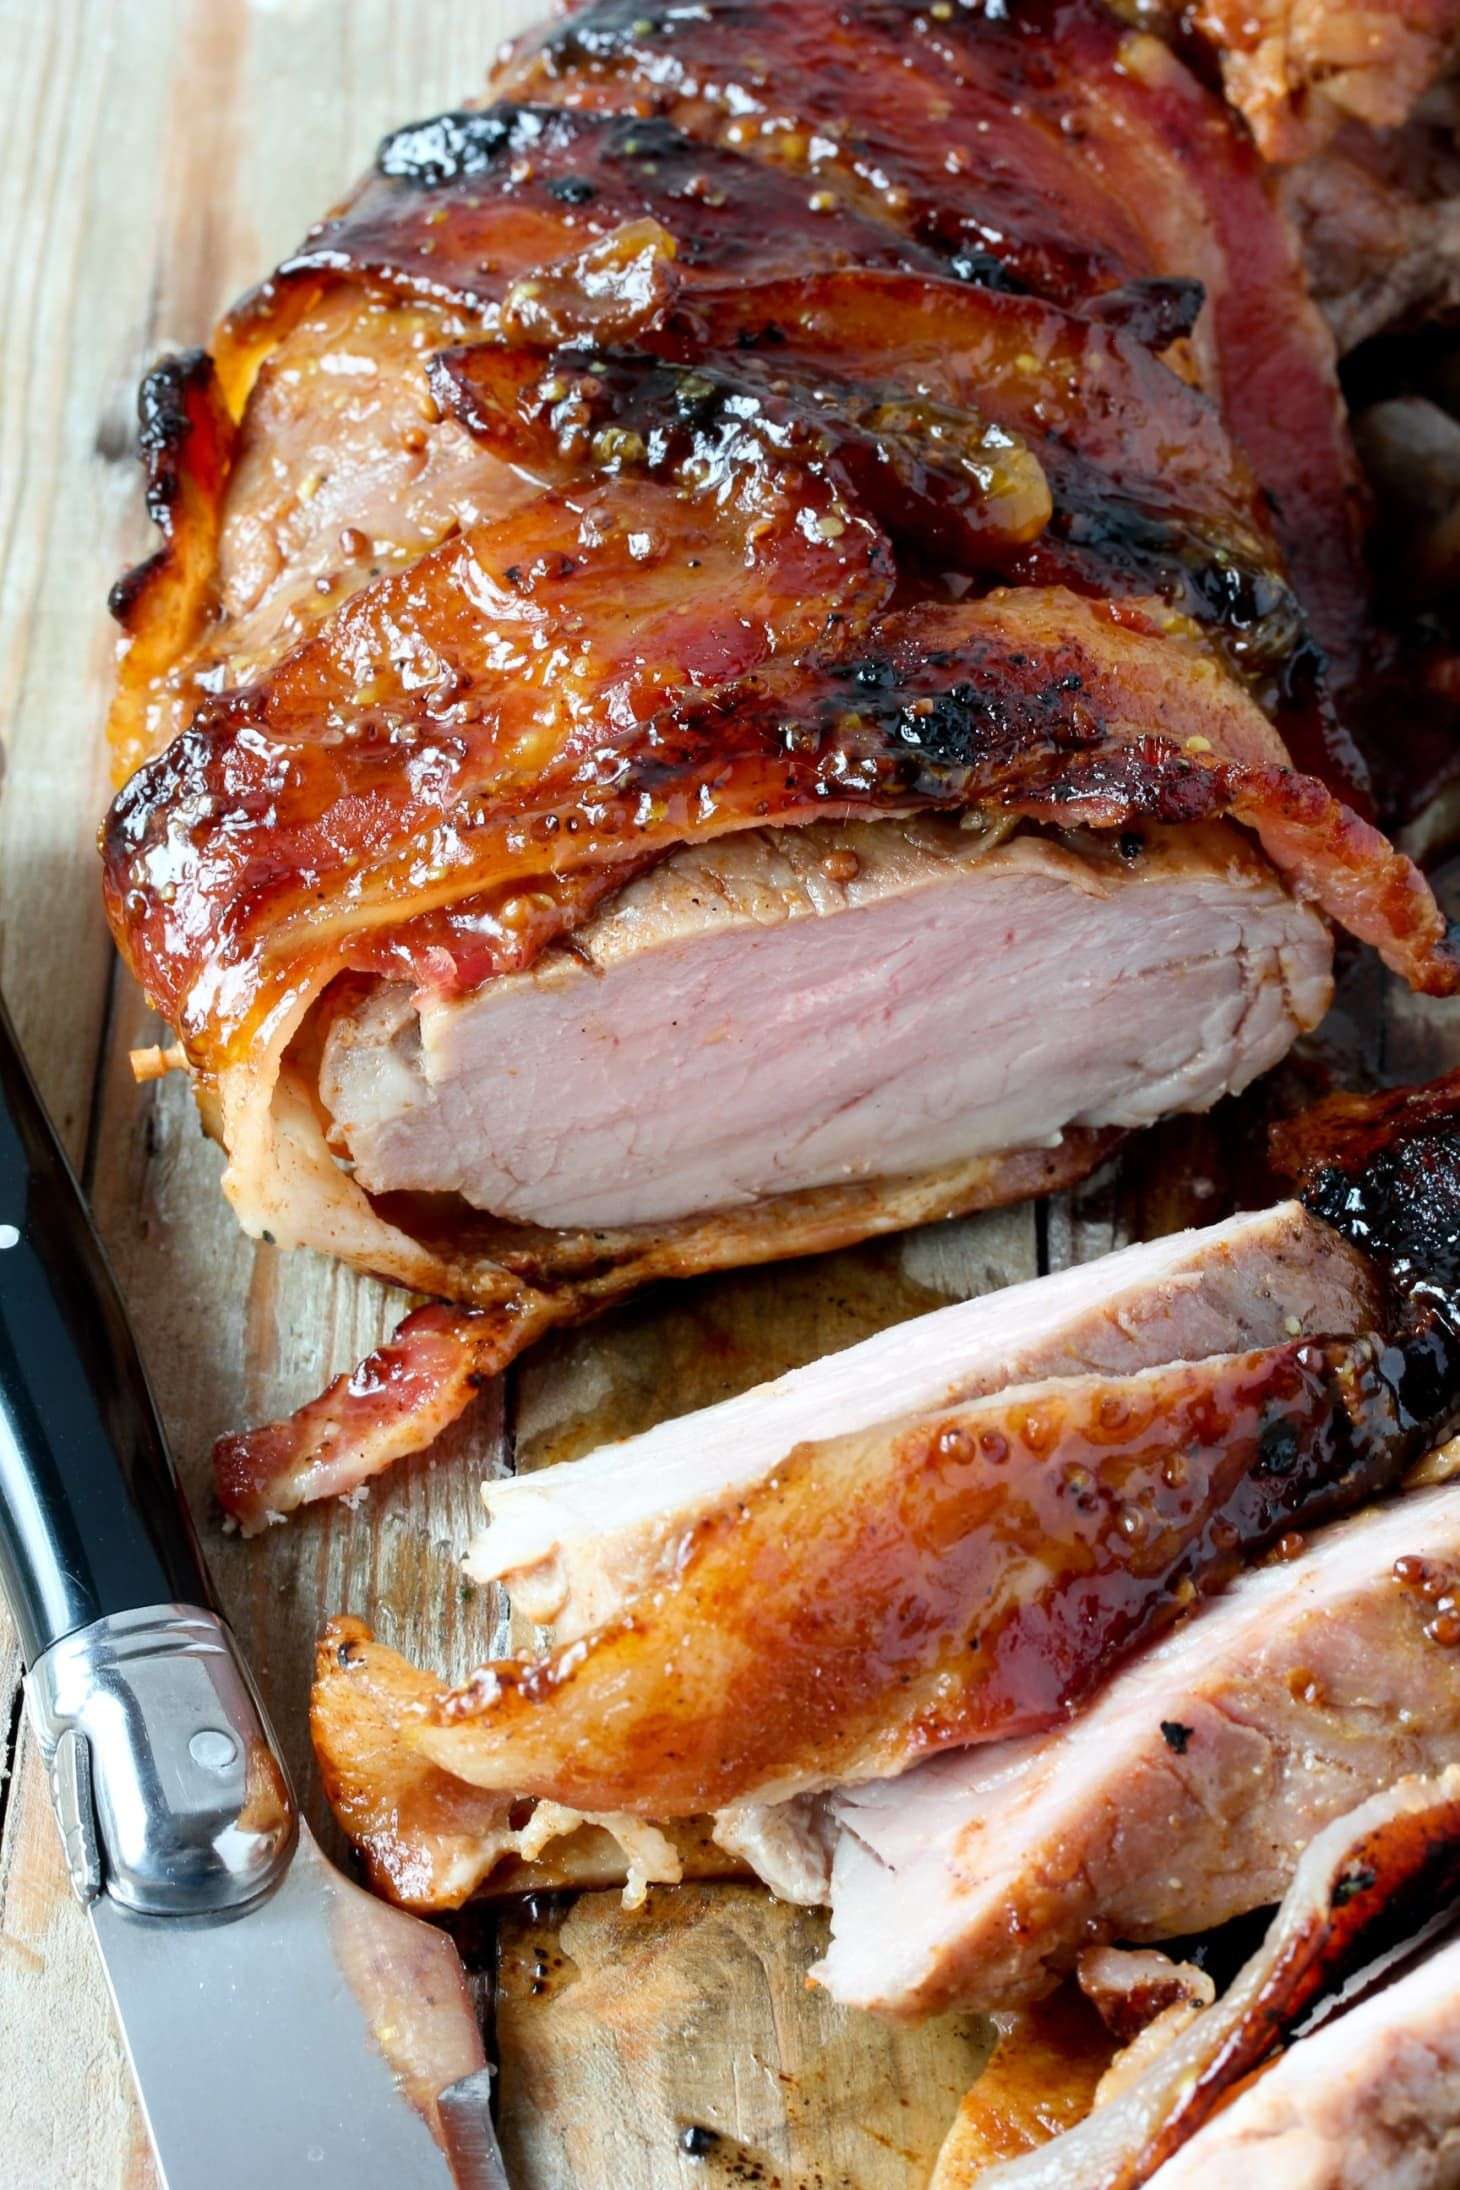 The Top 4 Ways to Cook Pork Tenderloin